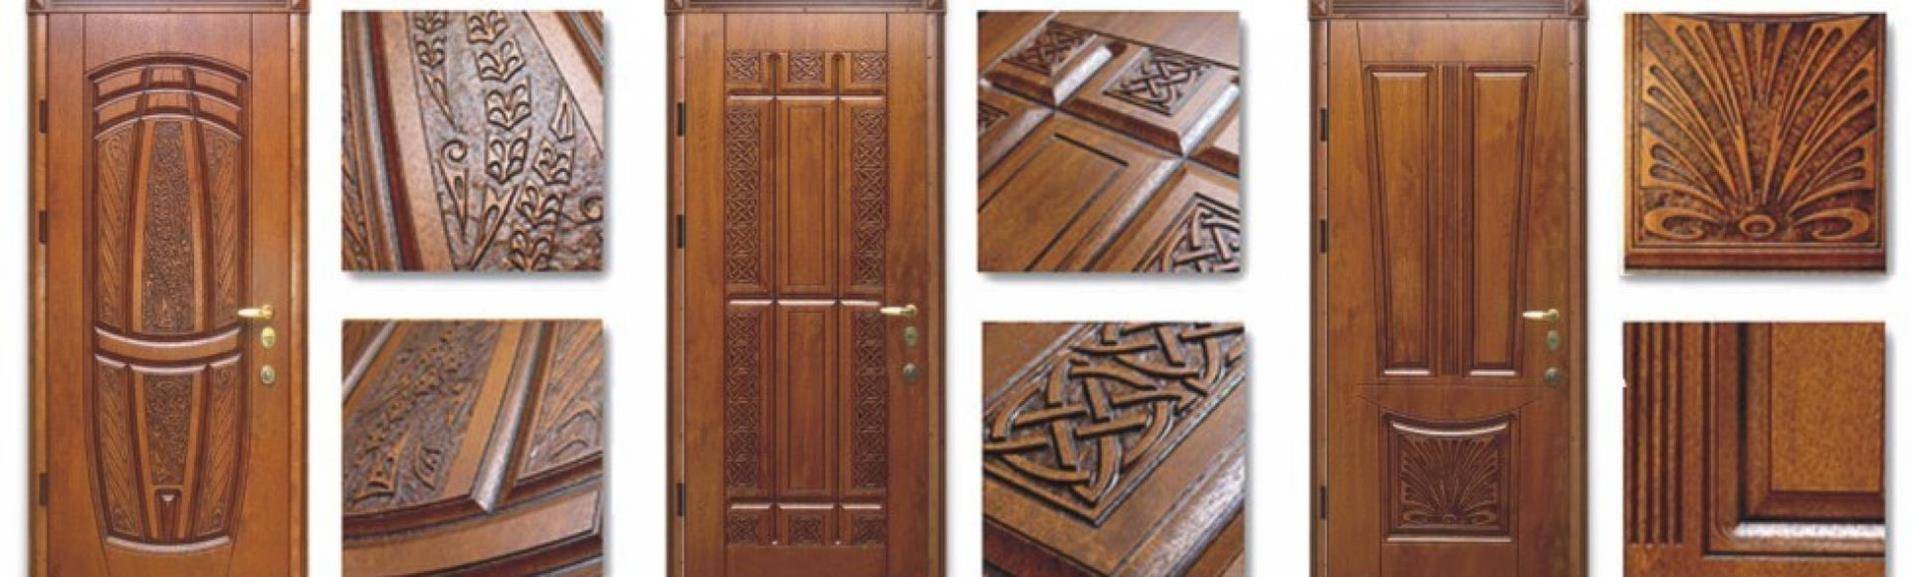 Наличники на двери: деревянные, мдф, телескопические, размеры, монтаж